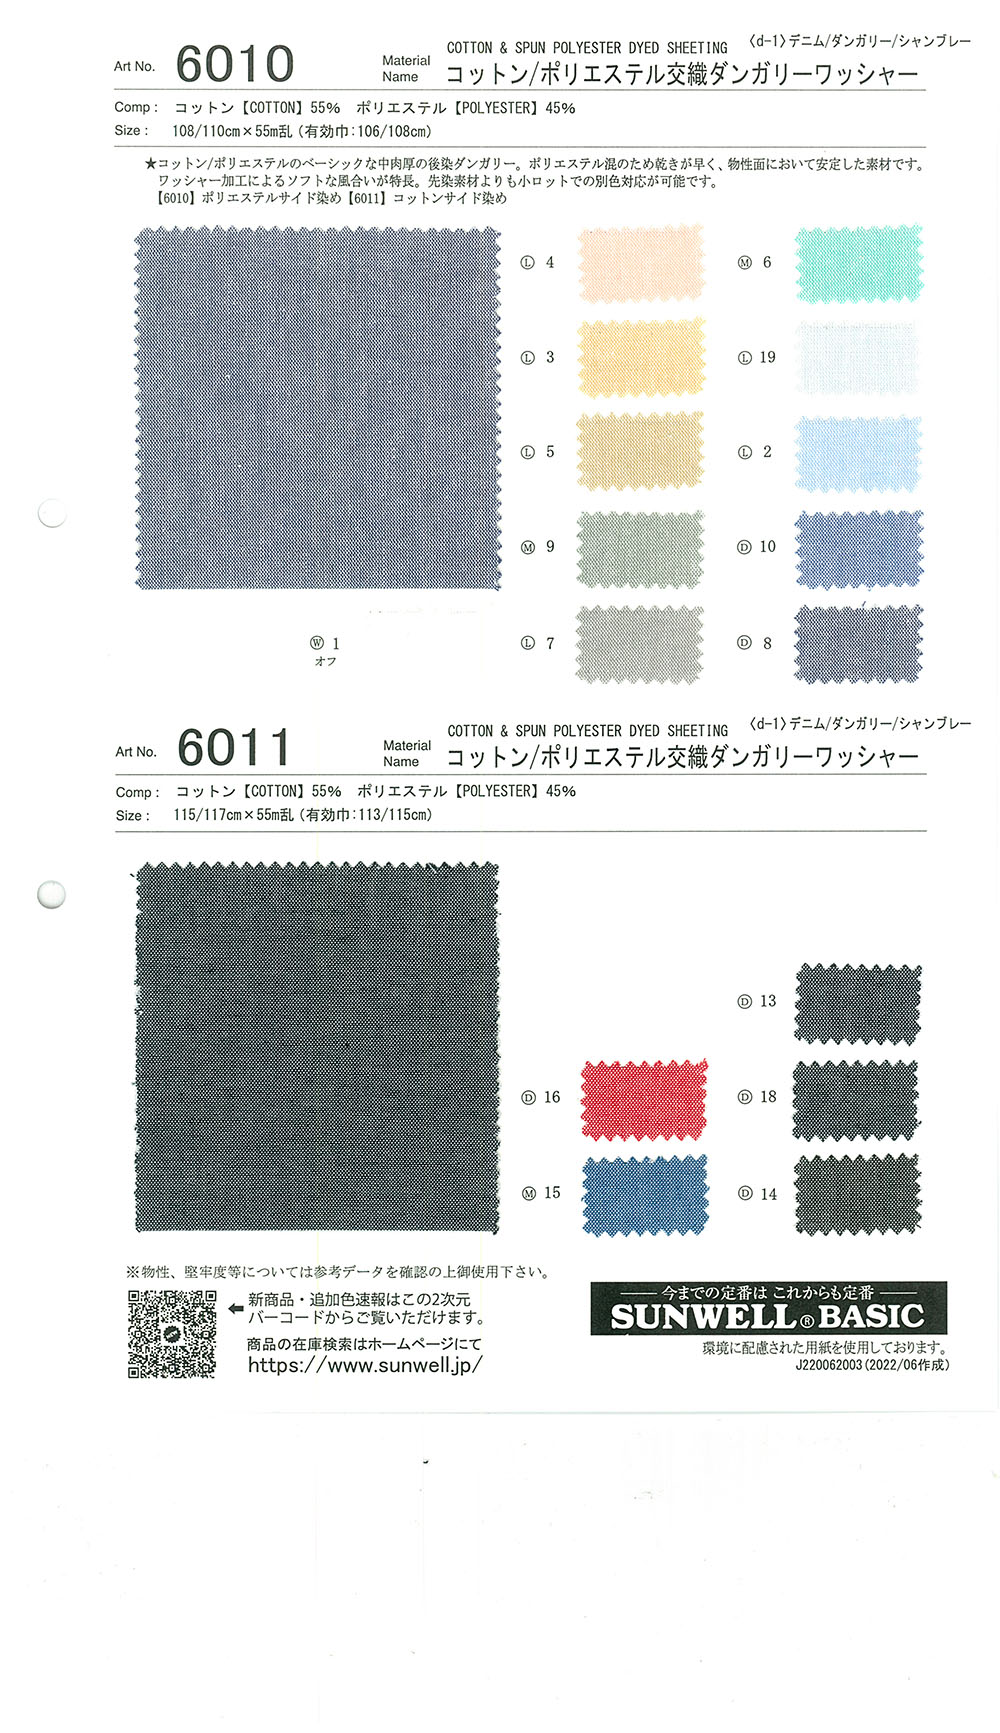 6011 帶水洗的棉/聚酯纖維混紡勞動布[面料] SUNWELL